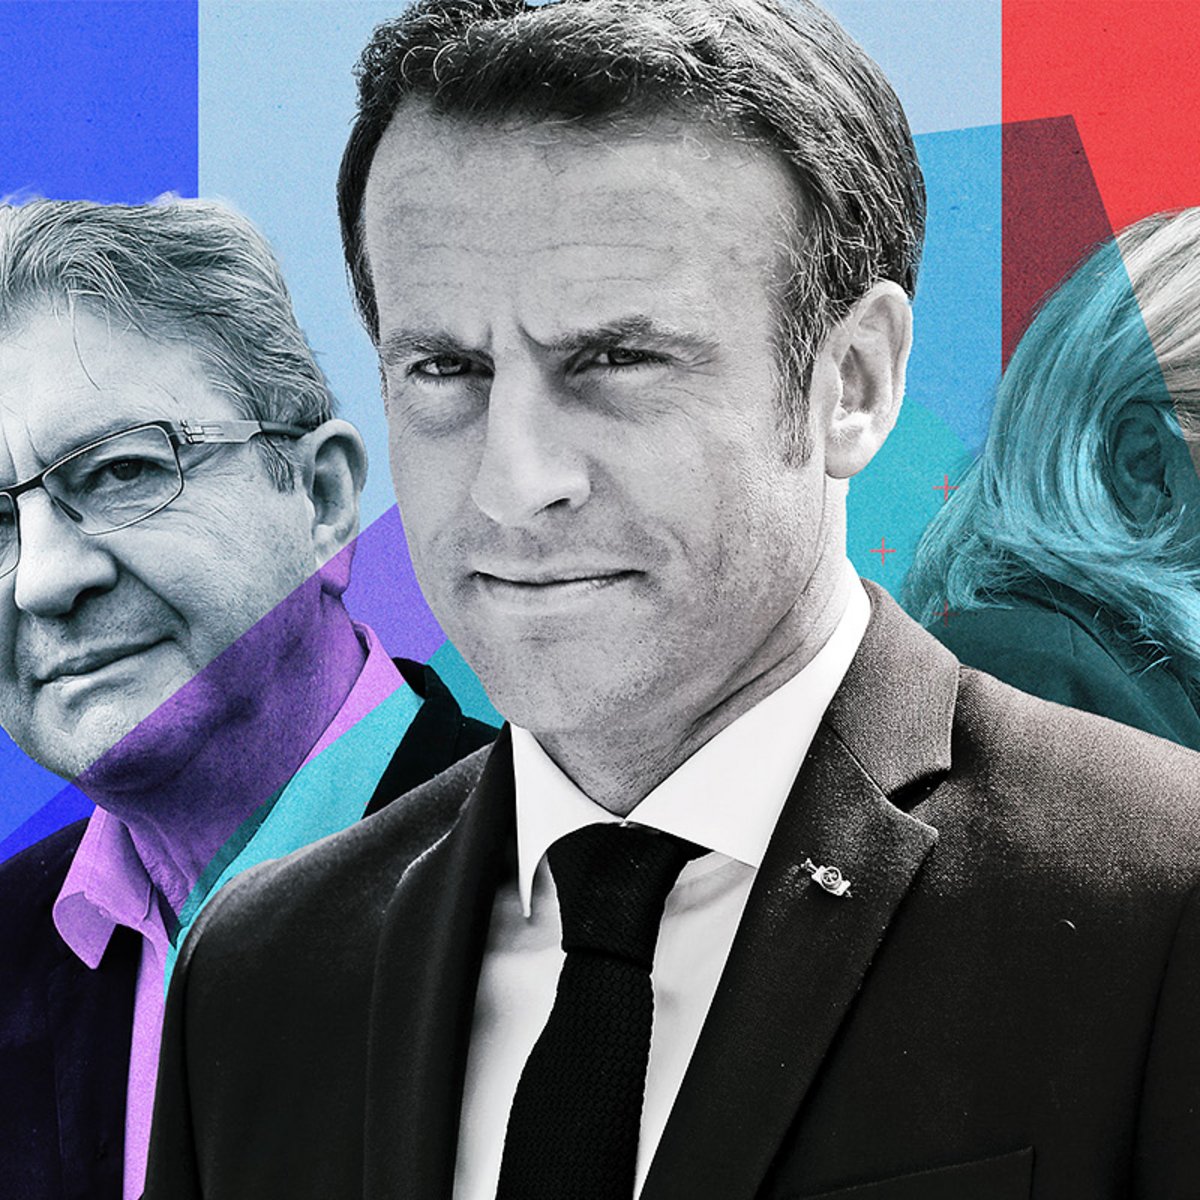 Γαλλία – Βουλευτικές εκλογές: Με μία μονάδα προηγείται ο Μακρόν έναντι του Μελανσόν